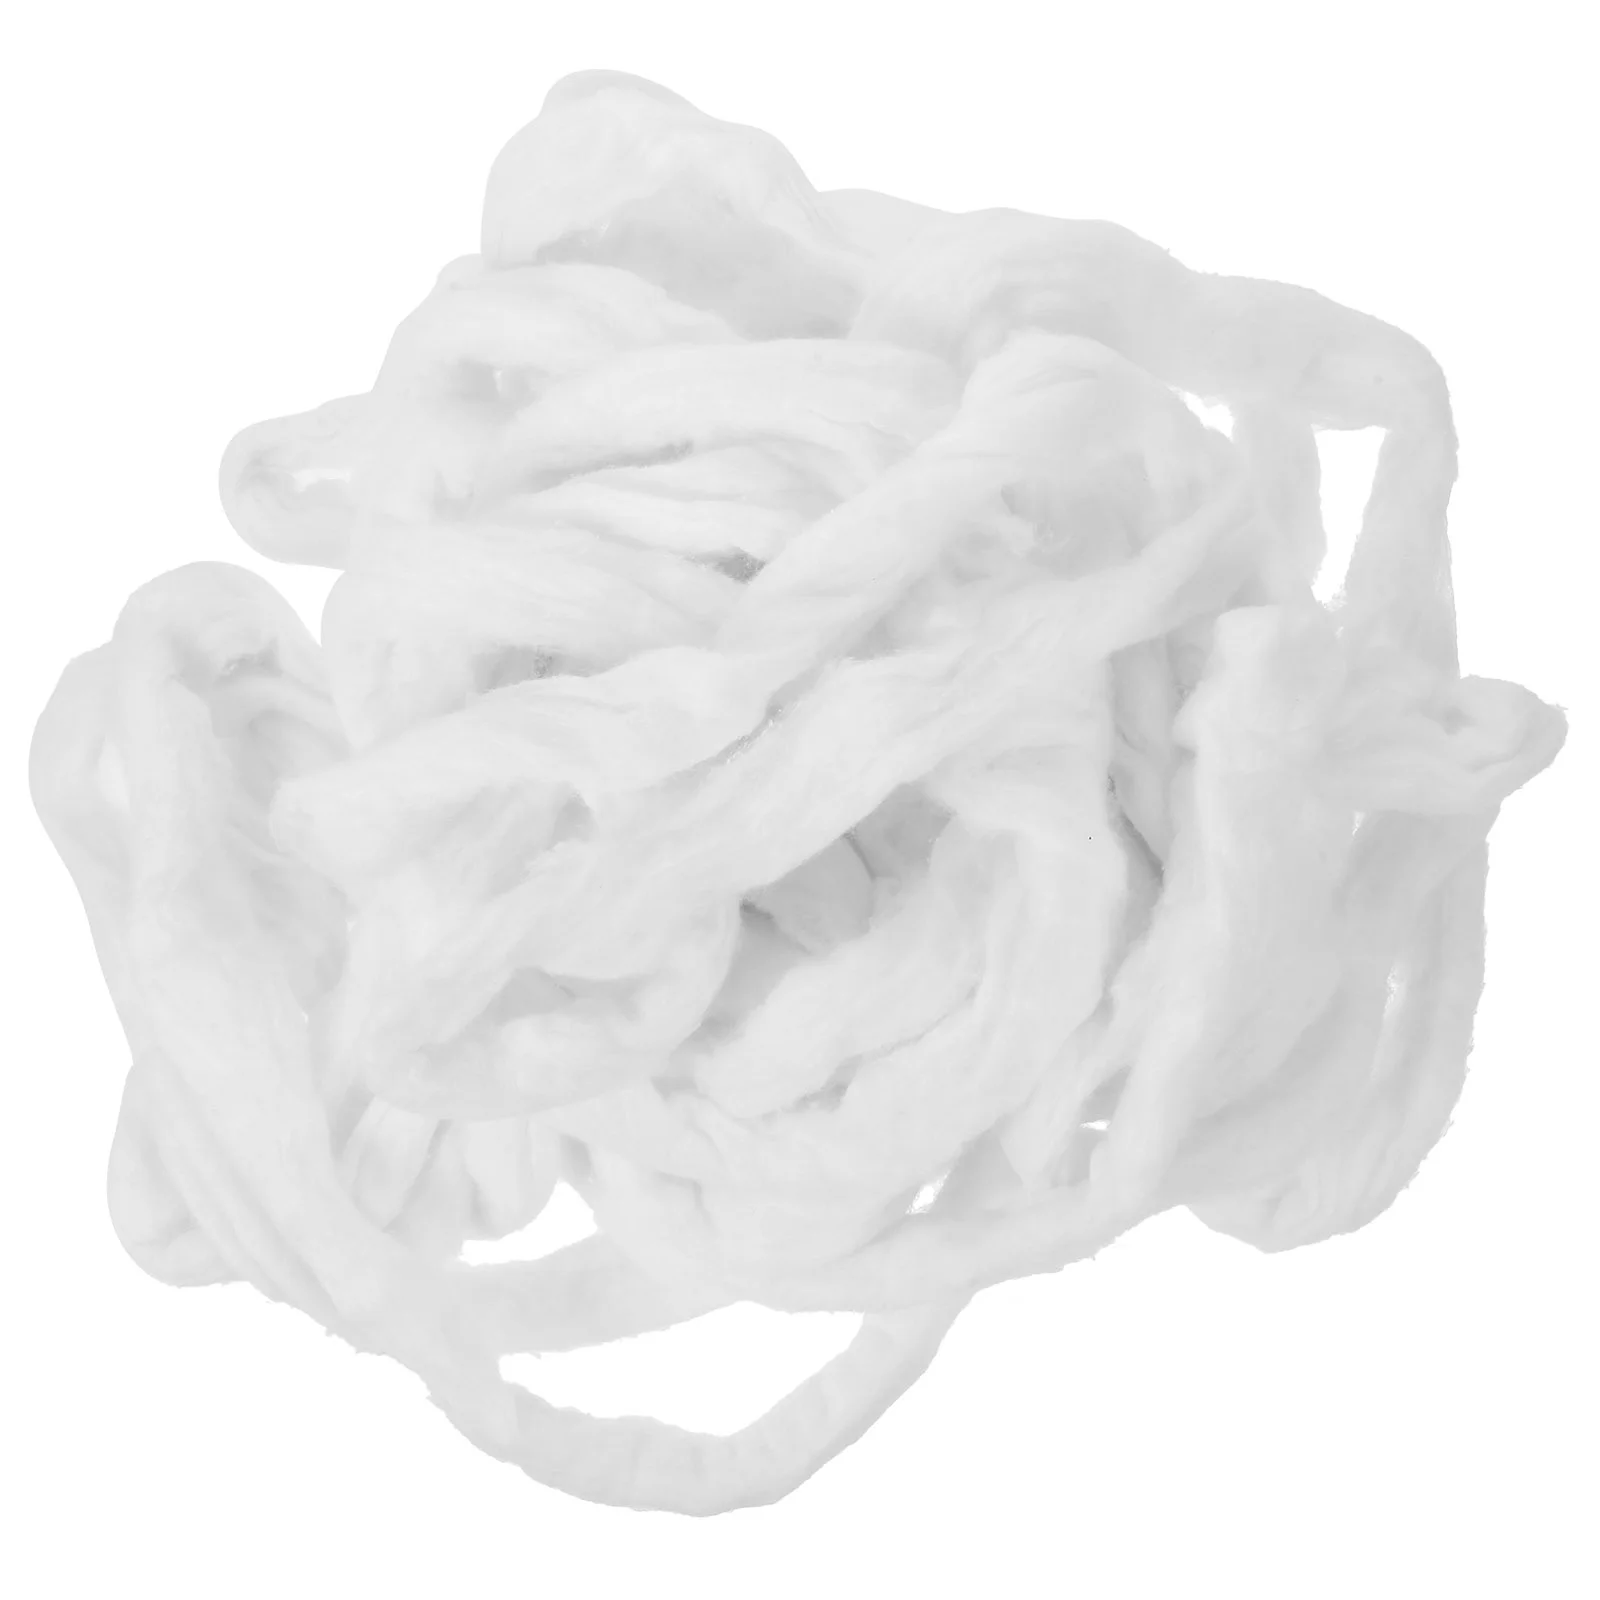 Bobina de algodón para manicura y salón, 1 paquete de 200g